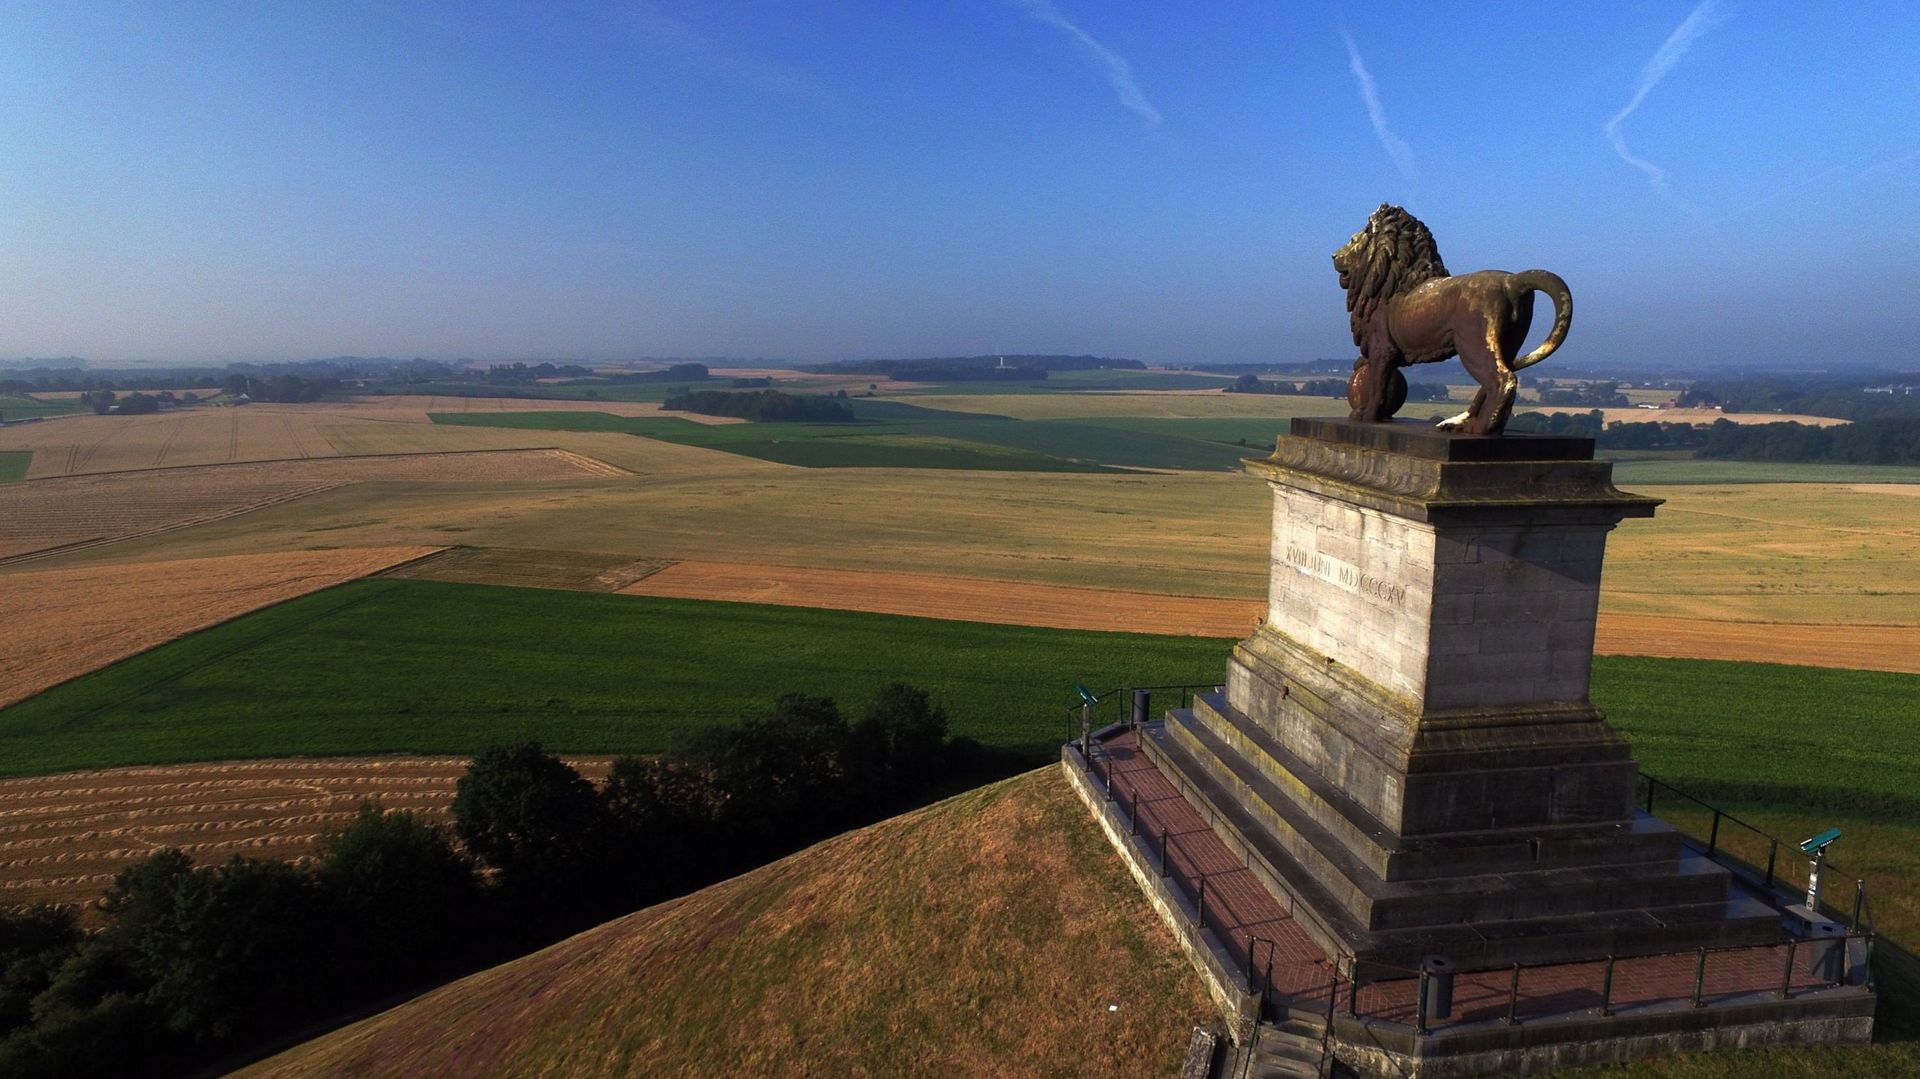 Waterloo/Braine-l'Alleud : statues et stèles en rapport à Napoléon sous surveillance policière